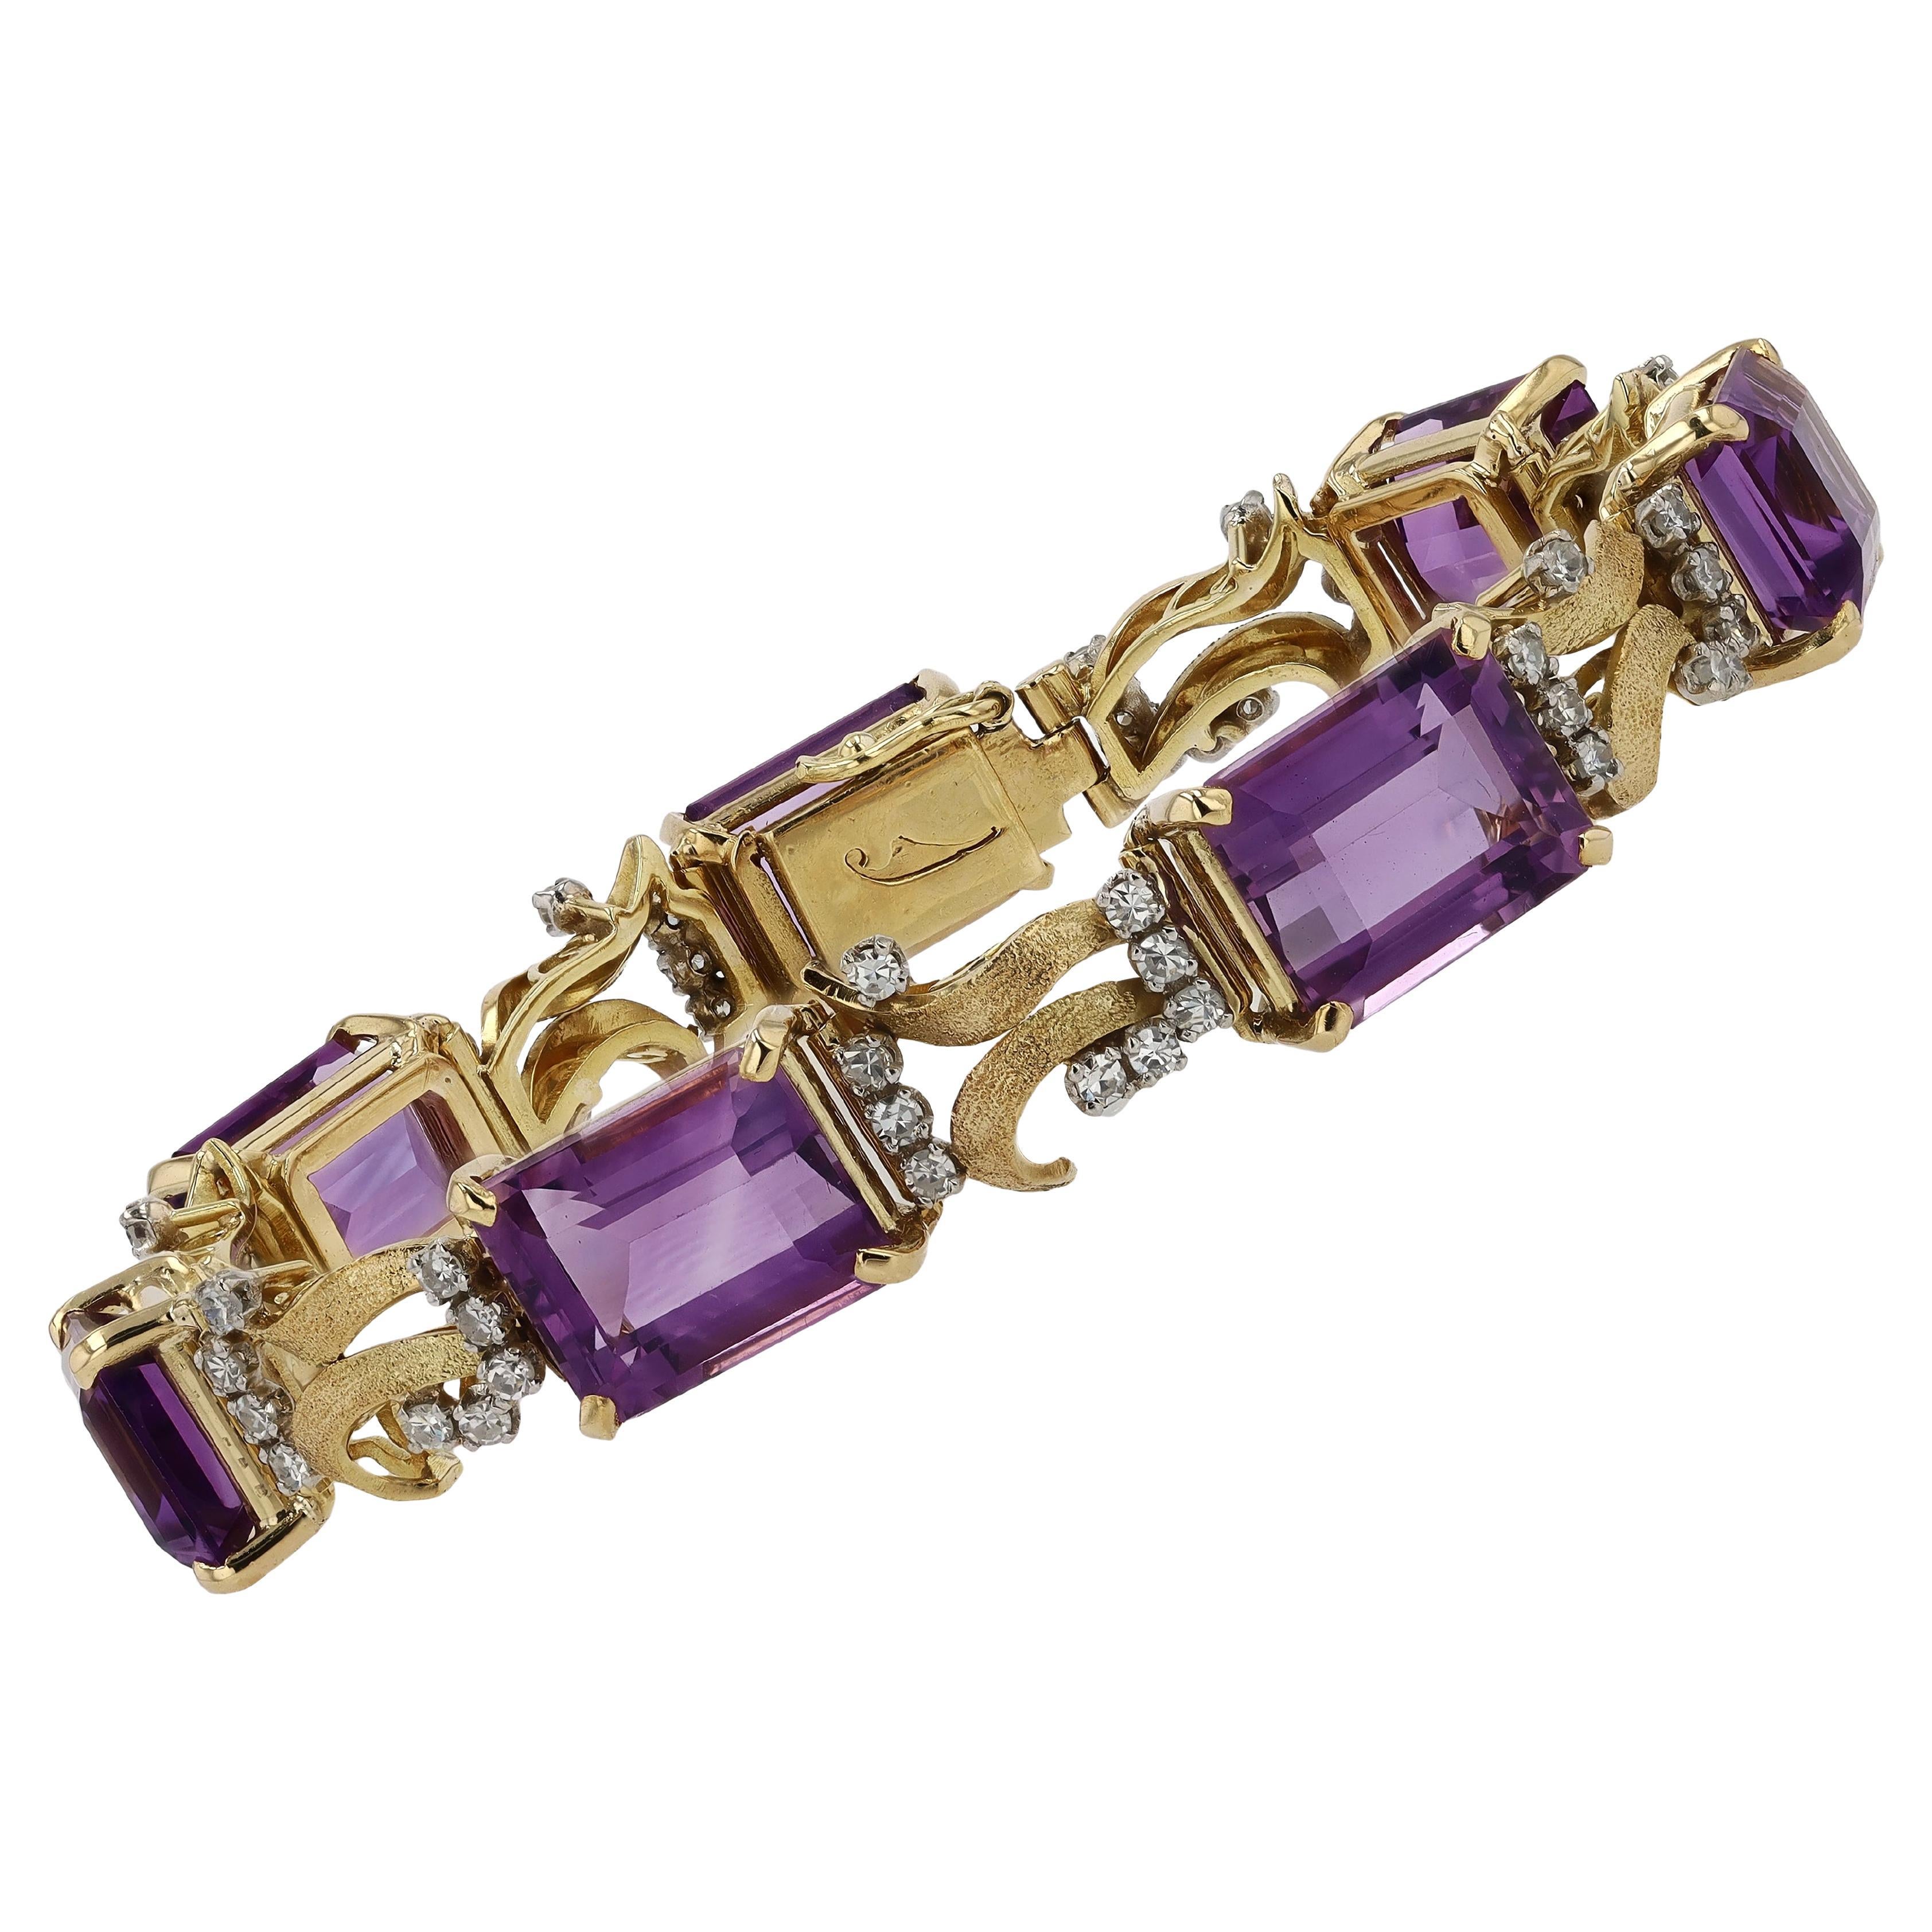 Dieses authentische Retro-Armband aus den 1940er-Jahren ist der Inbegriff eines Edelsteinarmbands im Vintage-Stil. Die luxuriösen, strukturierten Glieder aus 18 Karat Gelbgold umschließen zart 30 Karat beruhigende, reichhaltige, königspurpurne